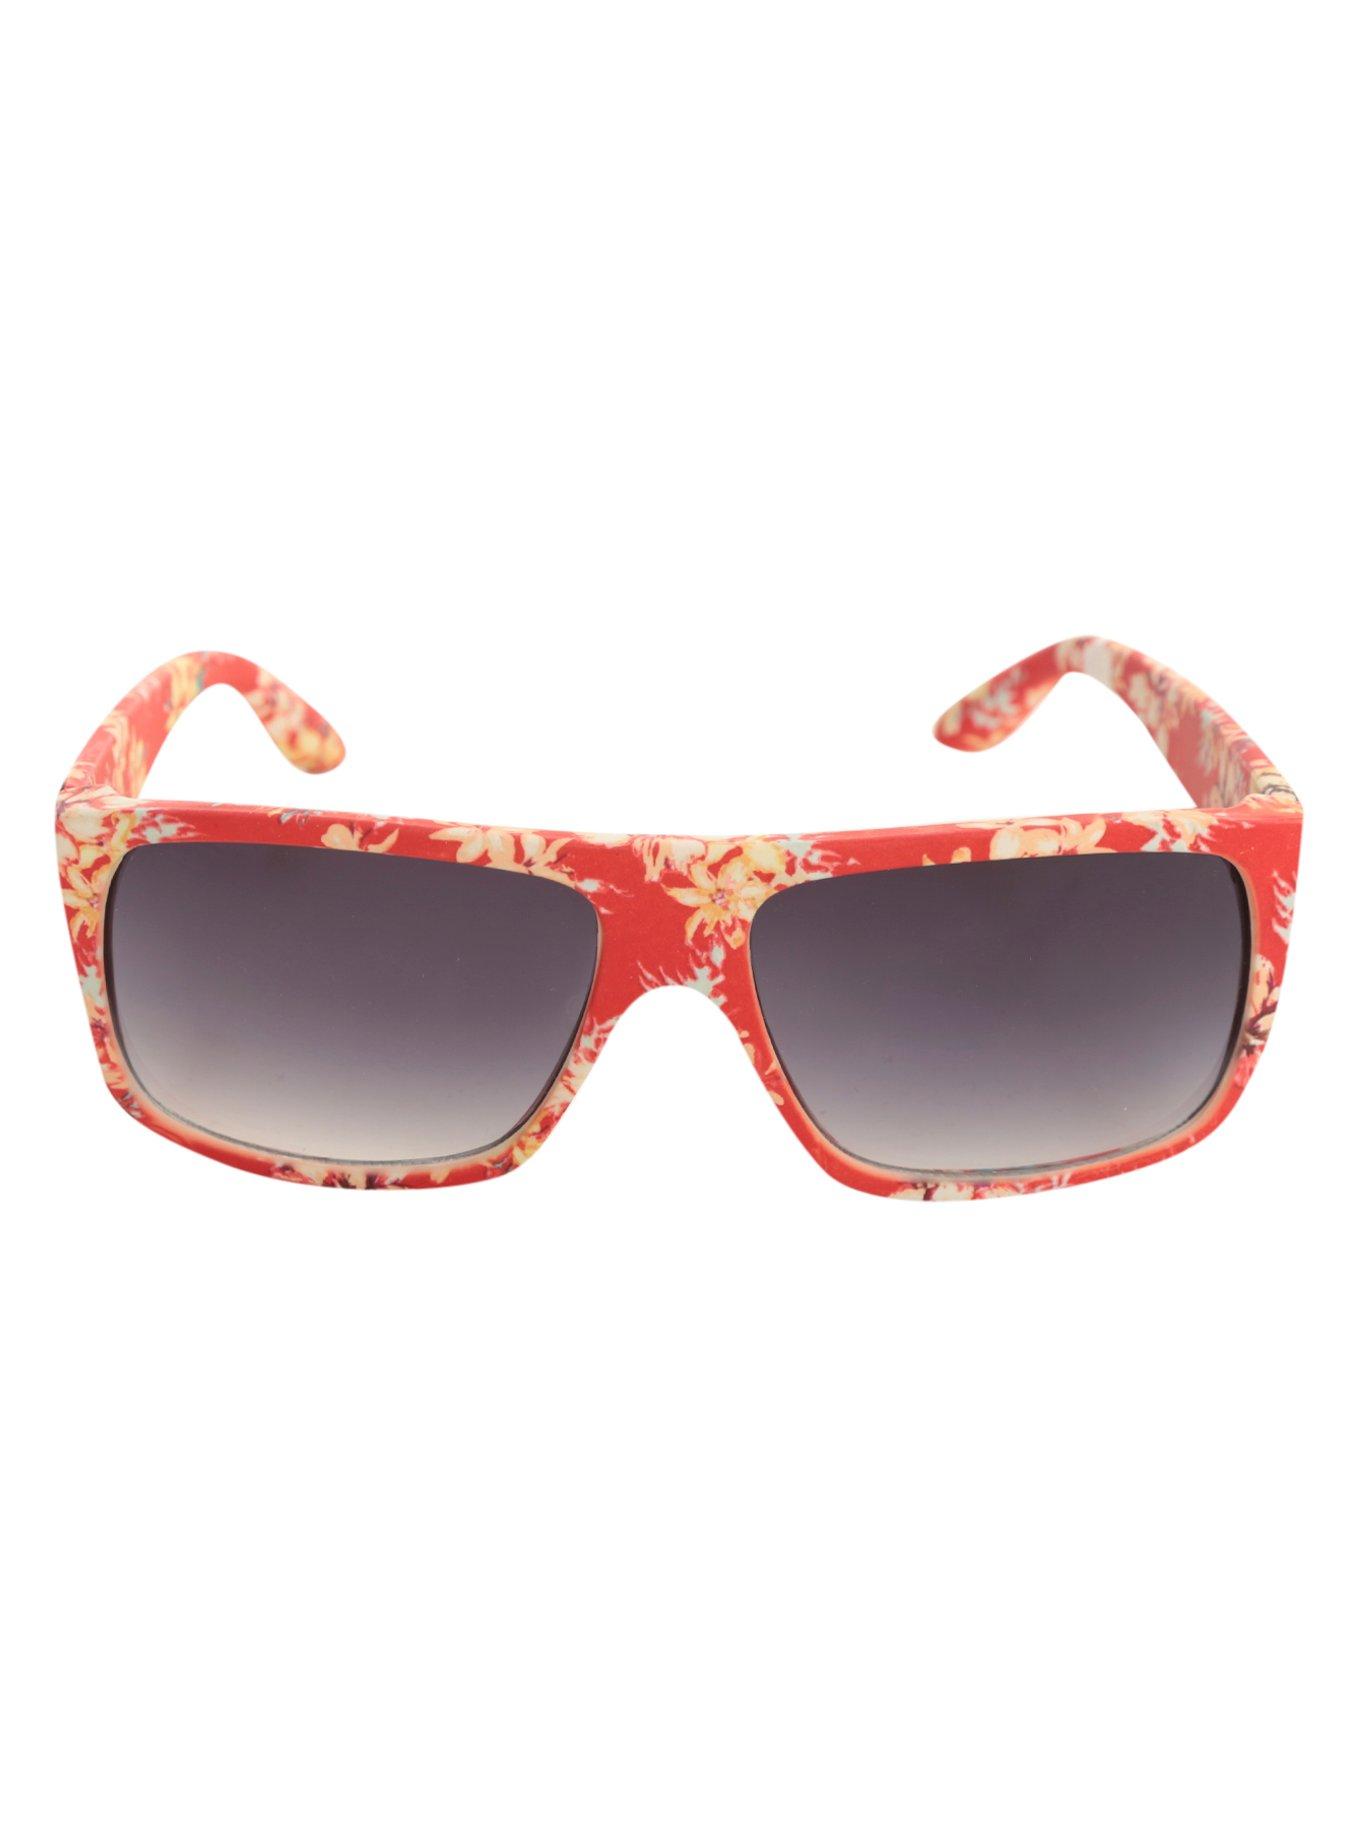 Hawaiian Red Flat Top Sunglasses, , alternate